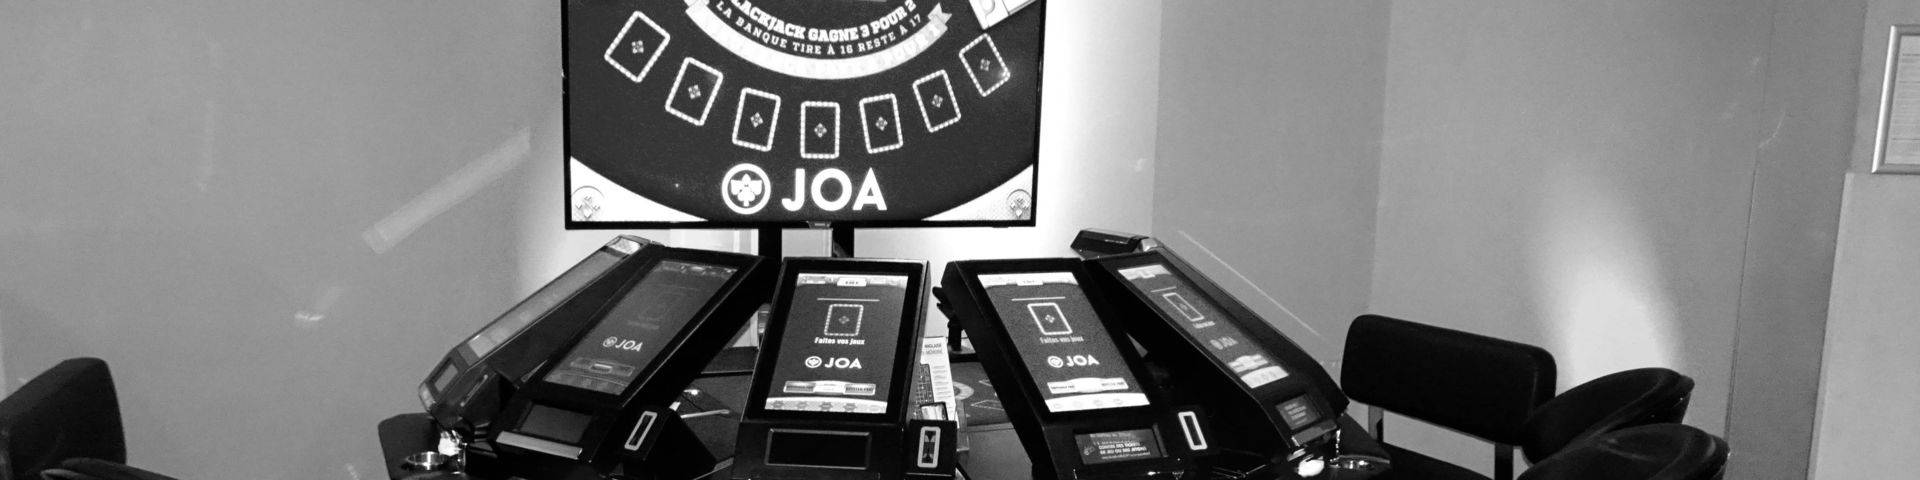 Black jack électronique noir blanc casino JOA